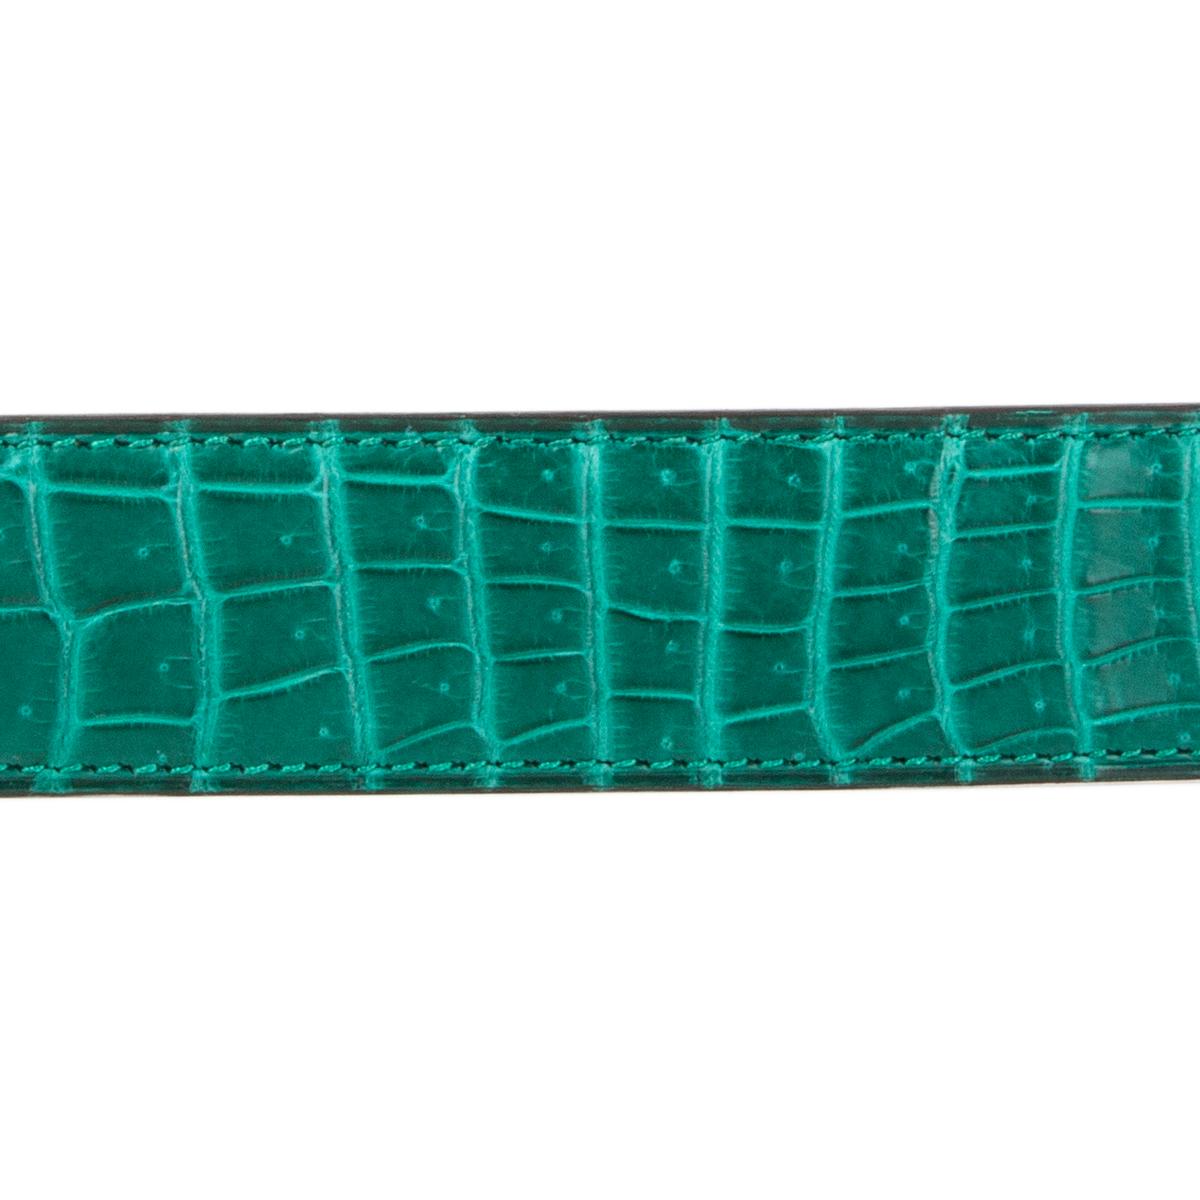 Hermes 32mm Gürtelriemen in Malachit (grün) Glänzendes Porosus-Krokodil. Brandneu. Kommt mit Box und CITES.

Tag Größe 100
Breite 3,2 cm (1,2 Zoll)
Passend für 97cm (37.8in) bis 102cm (39.8in)
